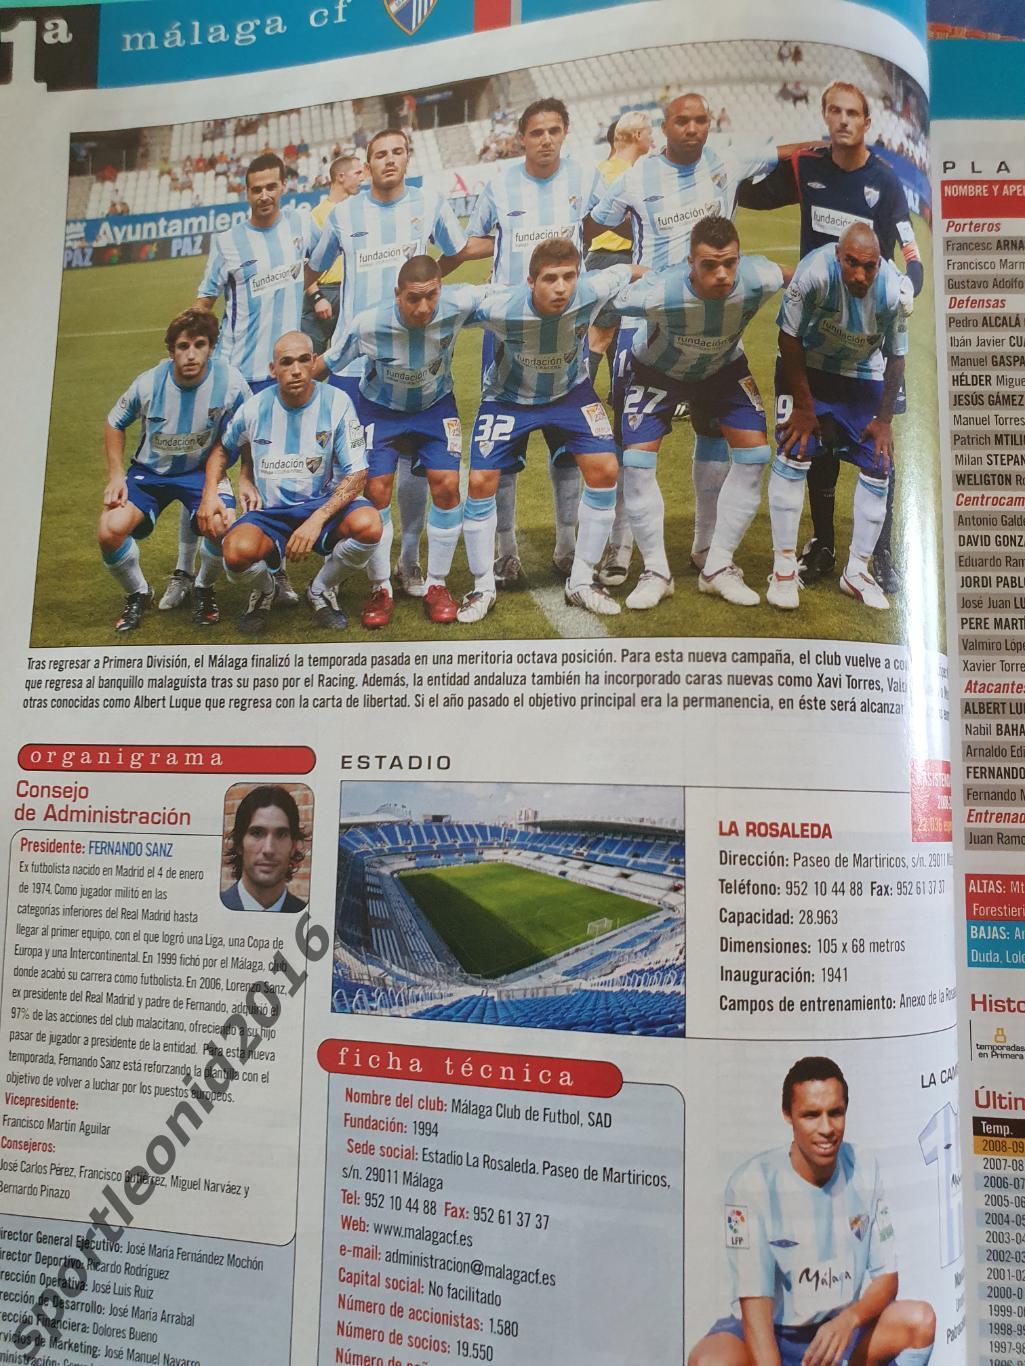 DON BALON EXTRA La Liga-09/10 Представление всех клубов . Постеры. 3